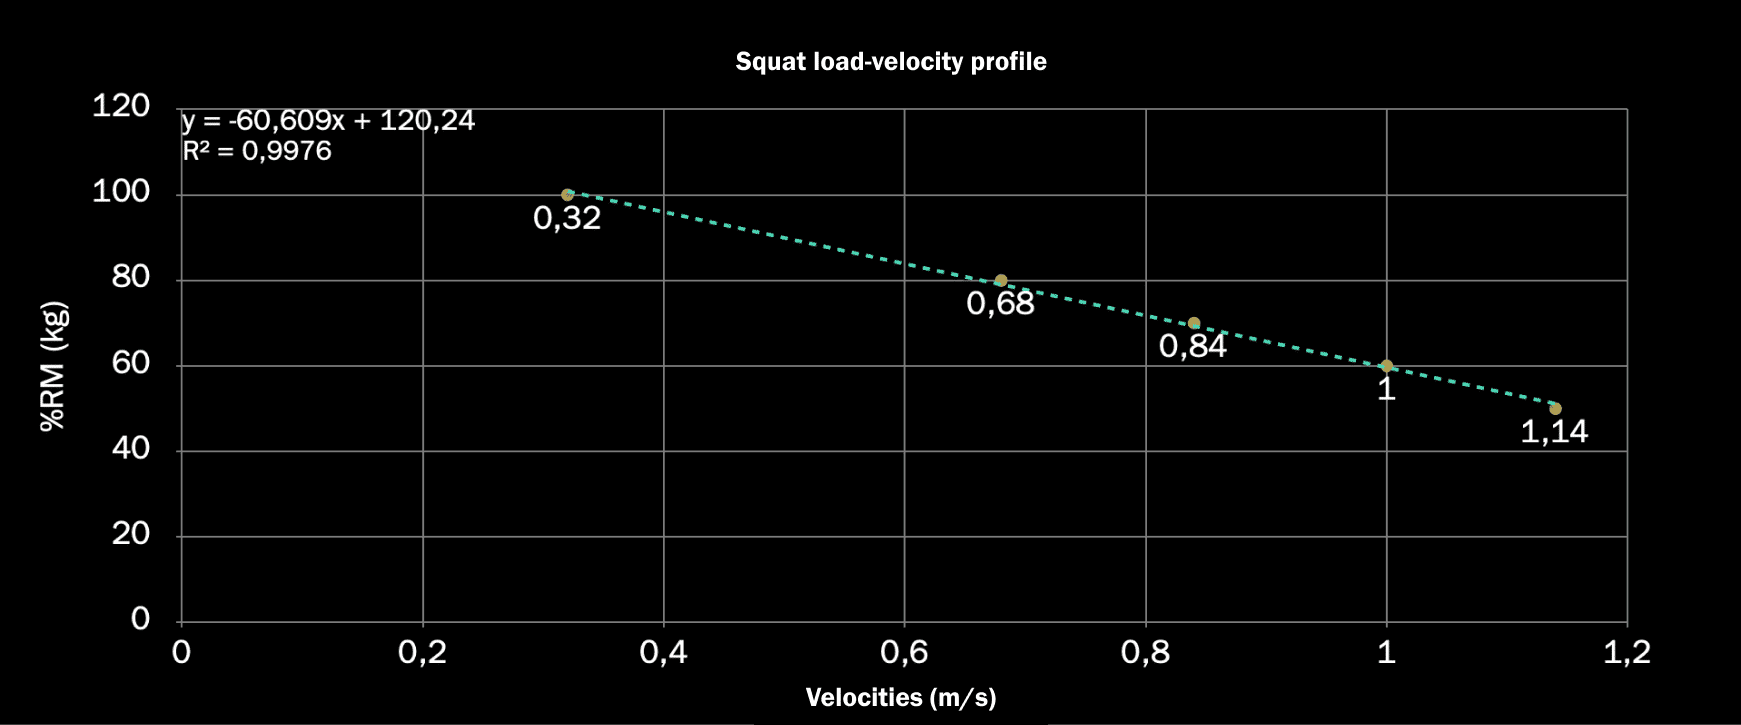 load velocity profile in a squat